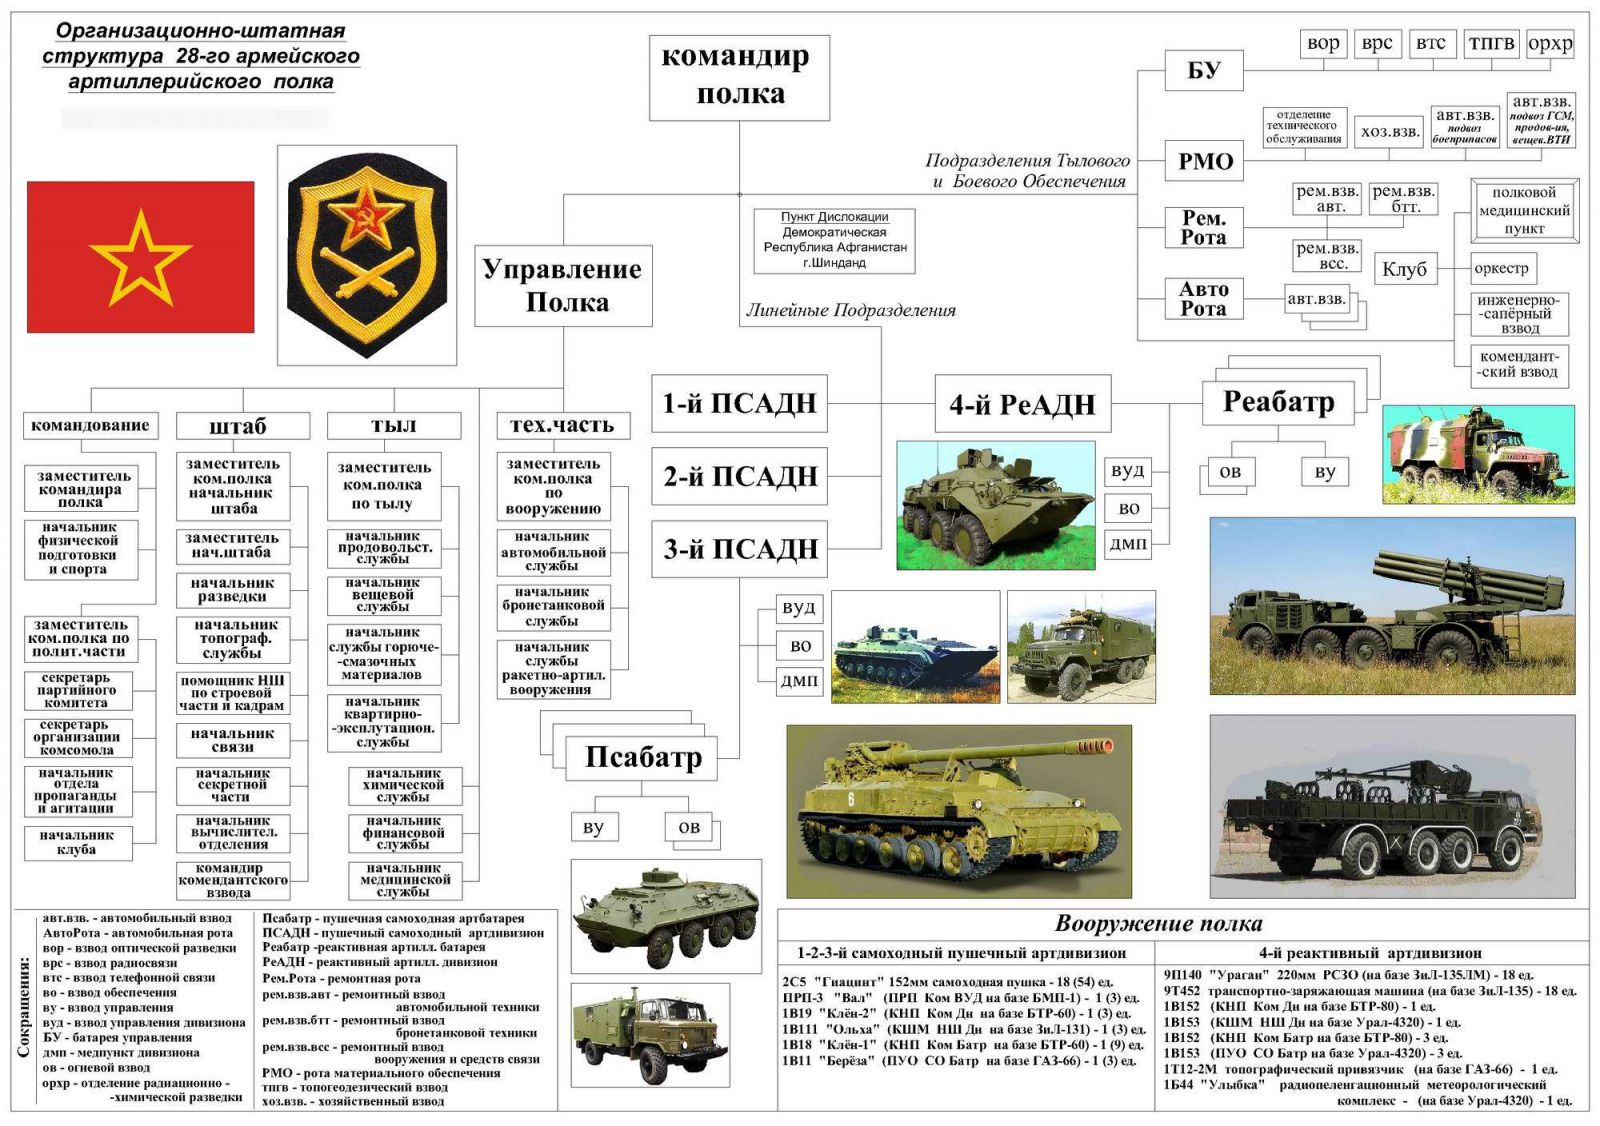 рота связи танкового полка